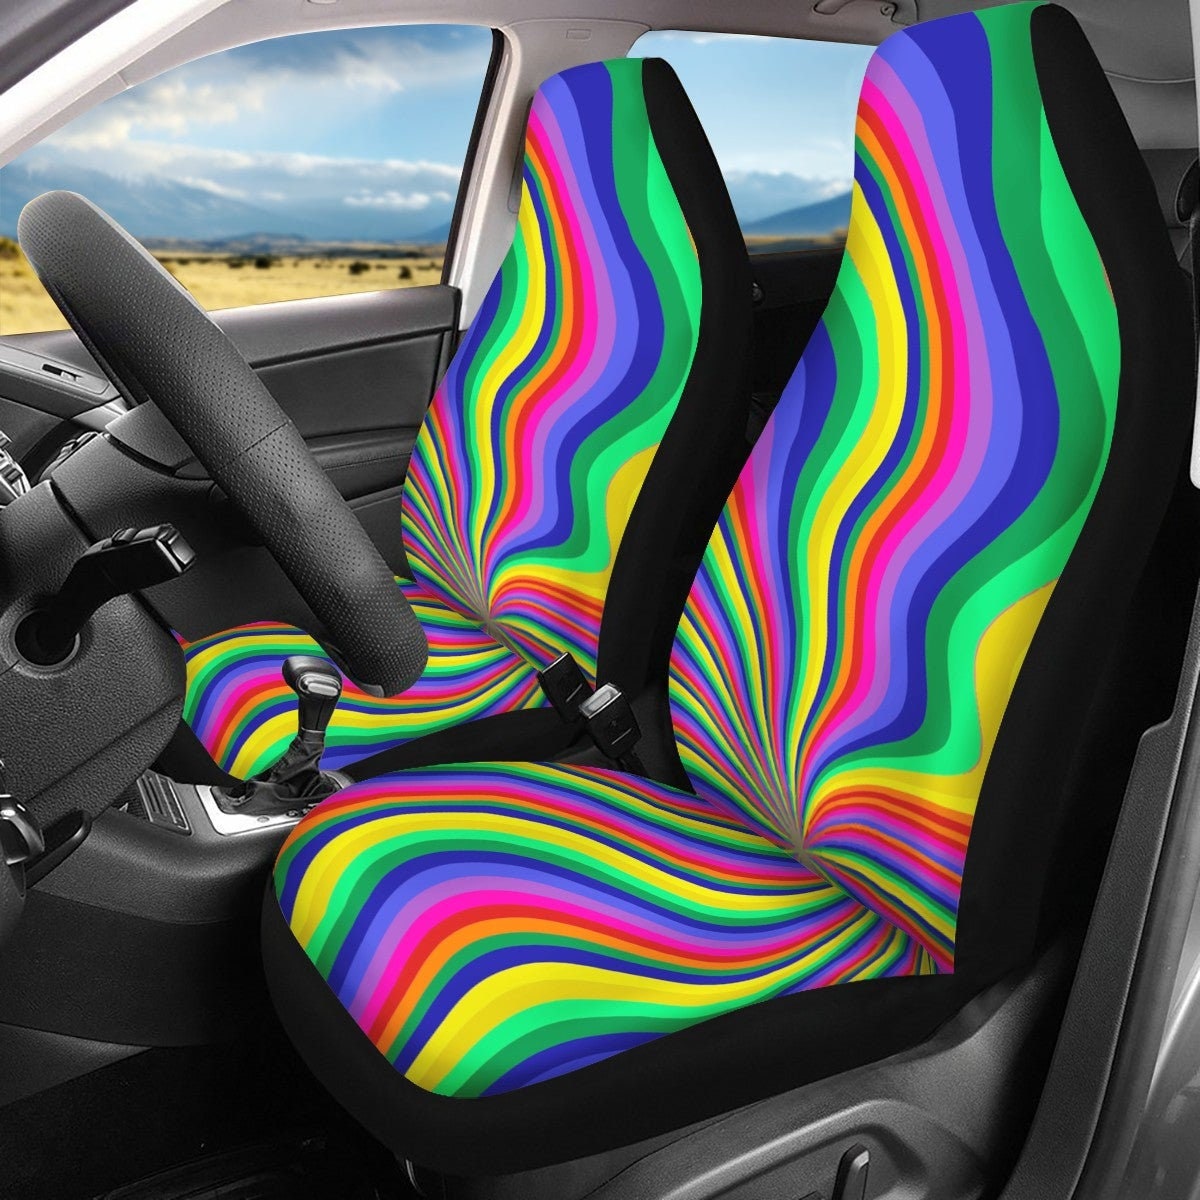 LVMMO Bunte lustige Autositzbezüge in Regenbogenfarben, Autozubehör mit  Smiley-Gesicht, universelle Passform für Autos, LKW, SUV, Vans